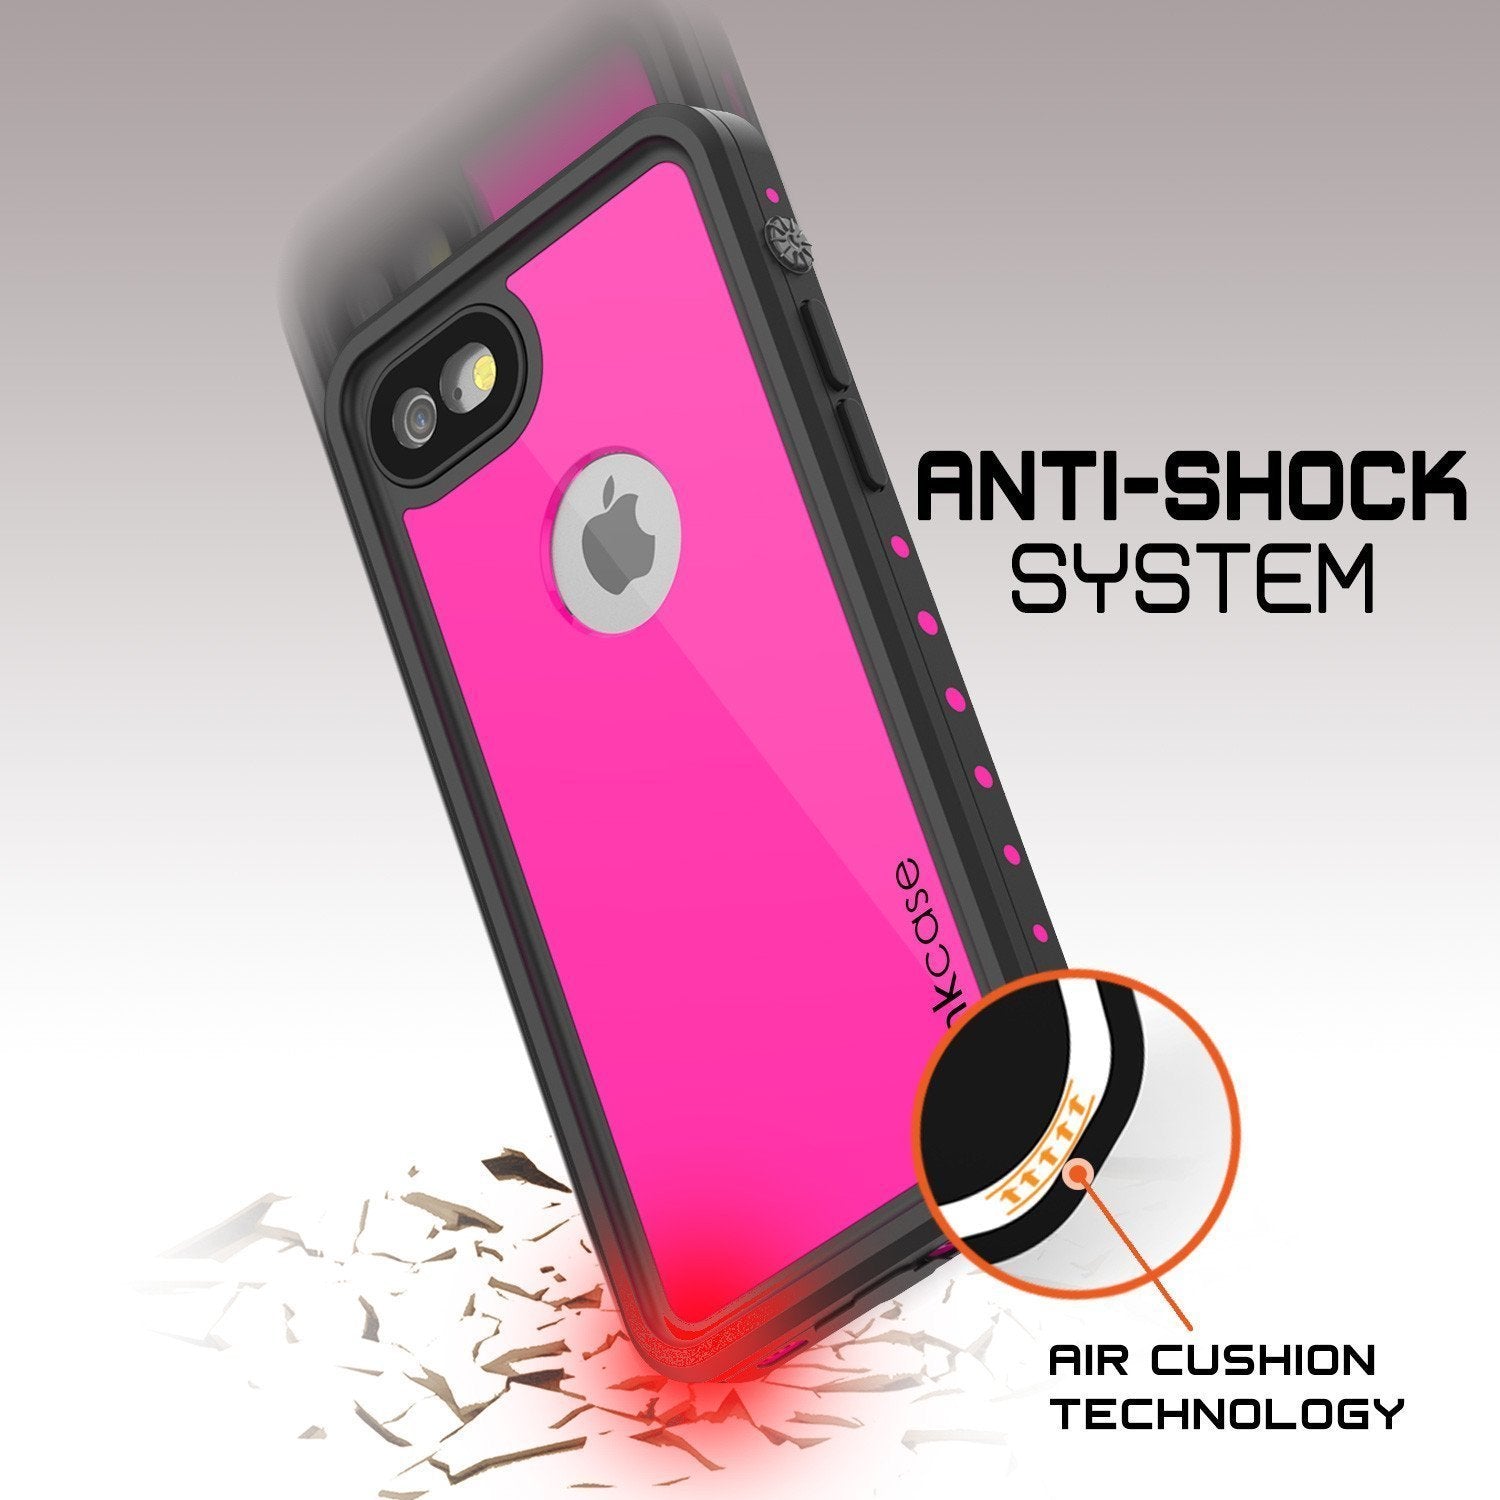 iPhone 8 Waterproof Case, Punkcase [Pink] [StudStar Series] [Slim Fit][IP68 Certified]  [Dirtproof] [Snowproof]